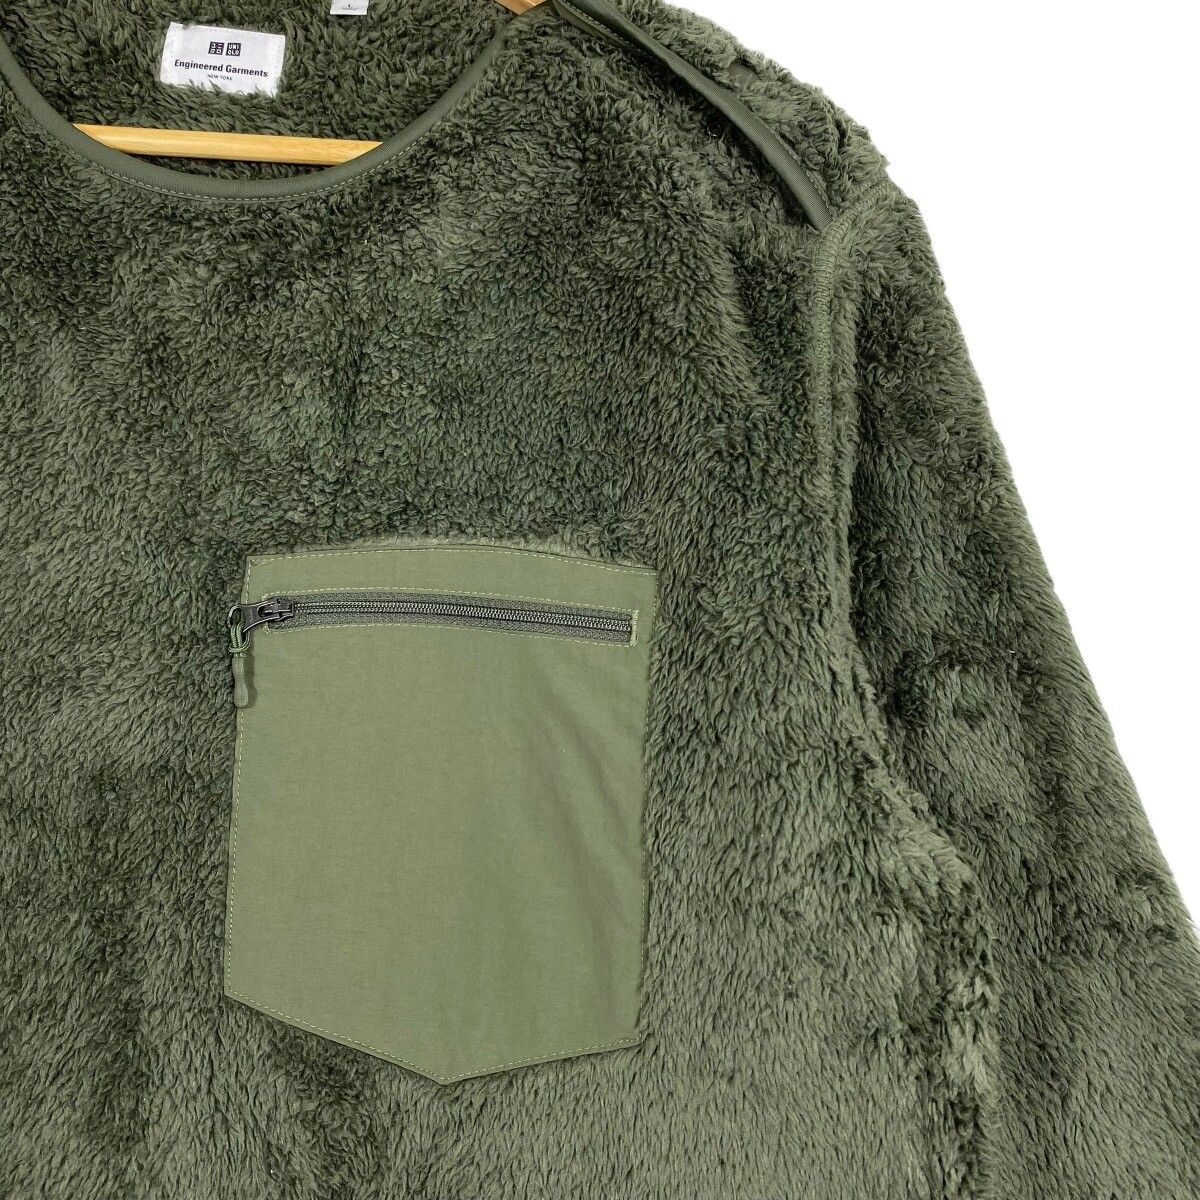 Uniqlo x Engineered Garments Fleece Sweater - 6